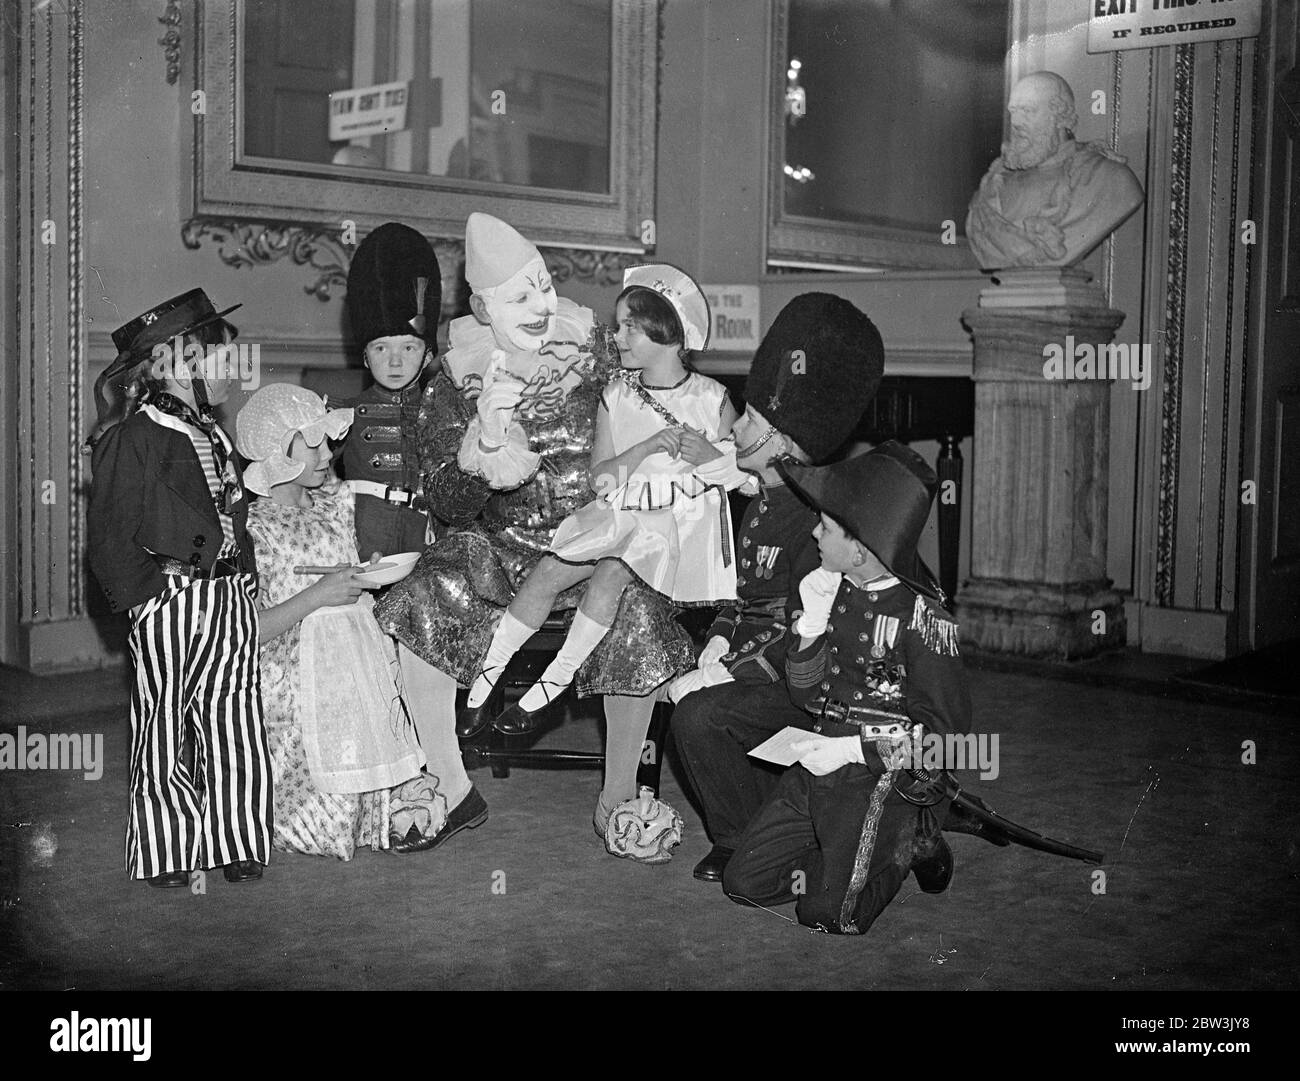 Le cirque clown divertit les invités de Lord Mayor à Mansion House , Londres . Joe Craston , le célèbre Cirque olympique Clown , divertit les invités . 8 janvier 1936 Banque D'Images